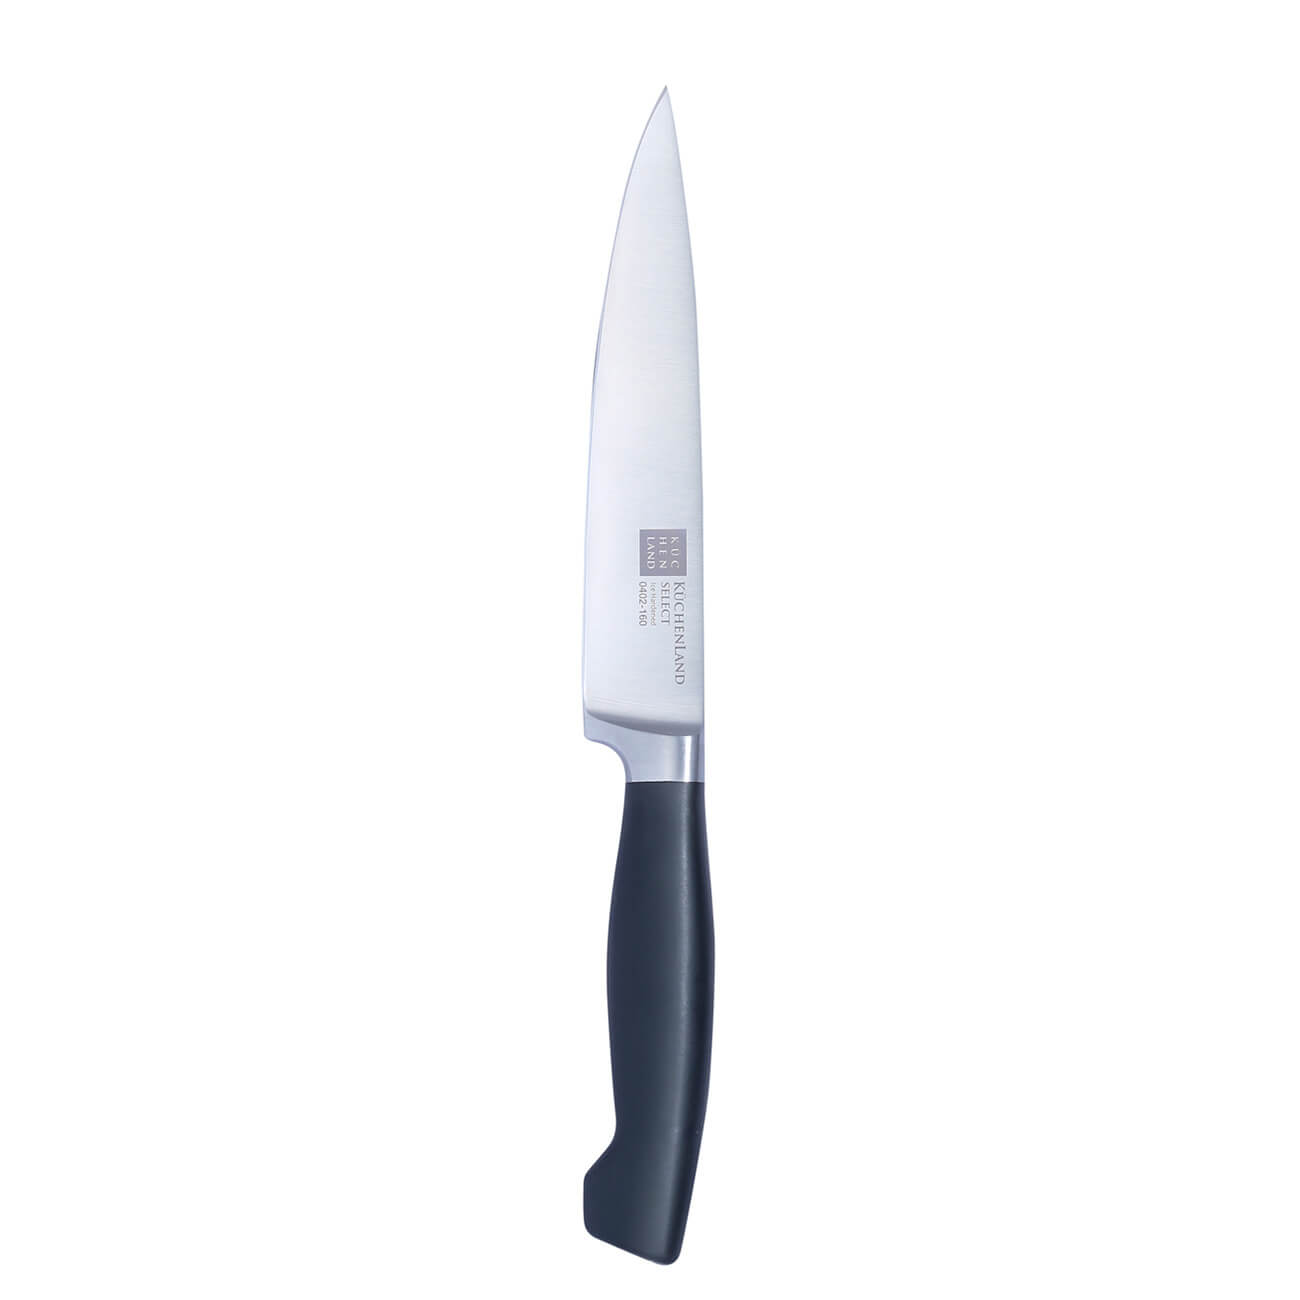 Kuchenland Нож для нарезки, 16 см, сталь/пластик, Select инструменты для моделирования и придания формы набор 4 шт пластик 16 см